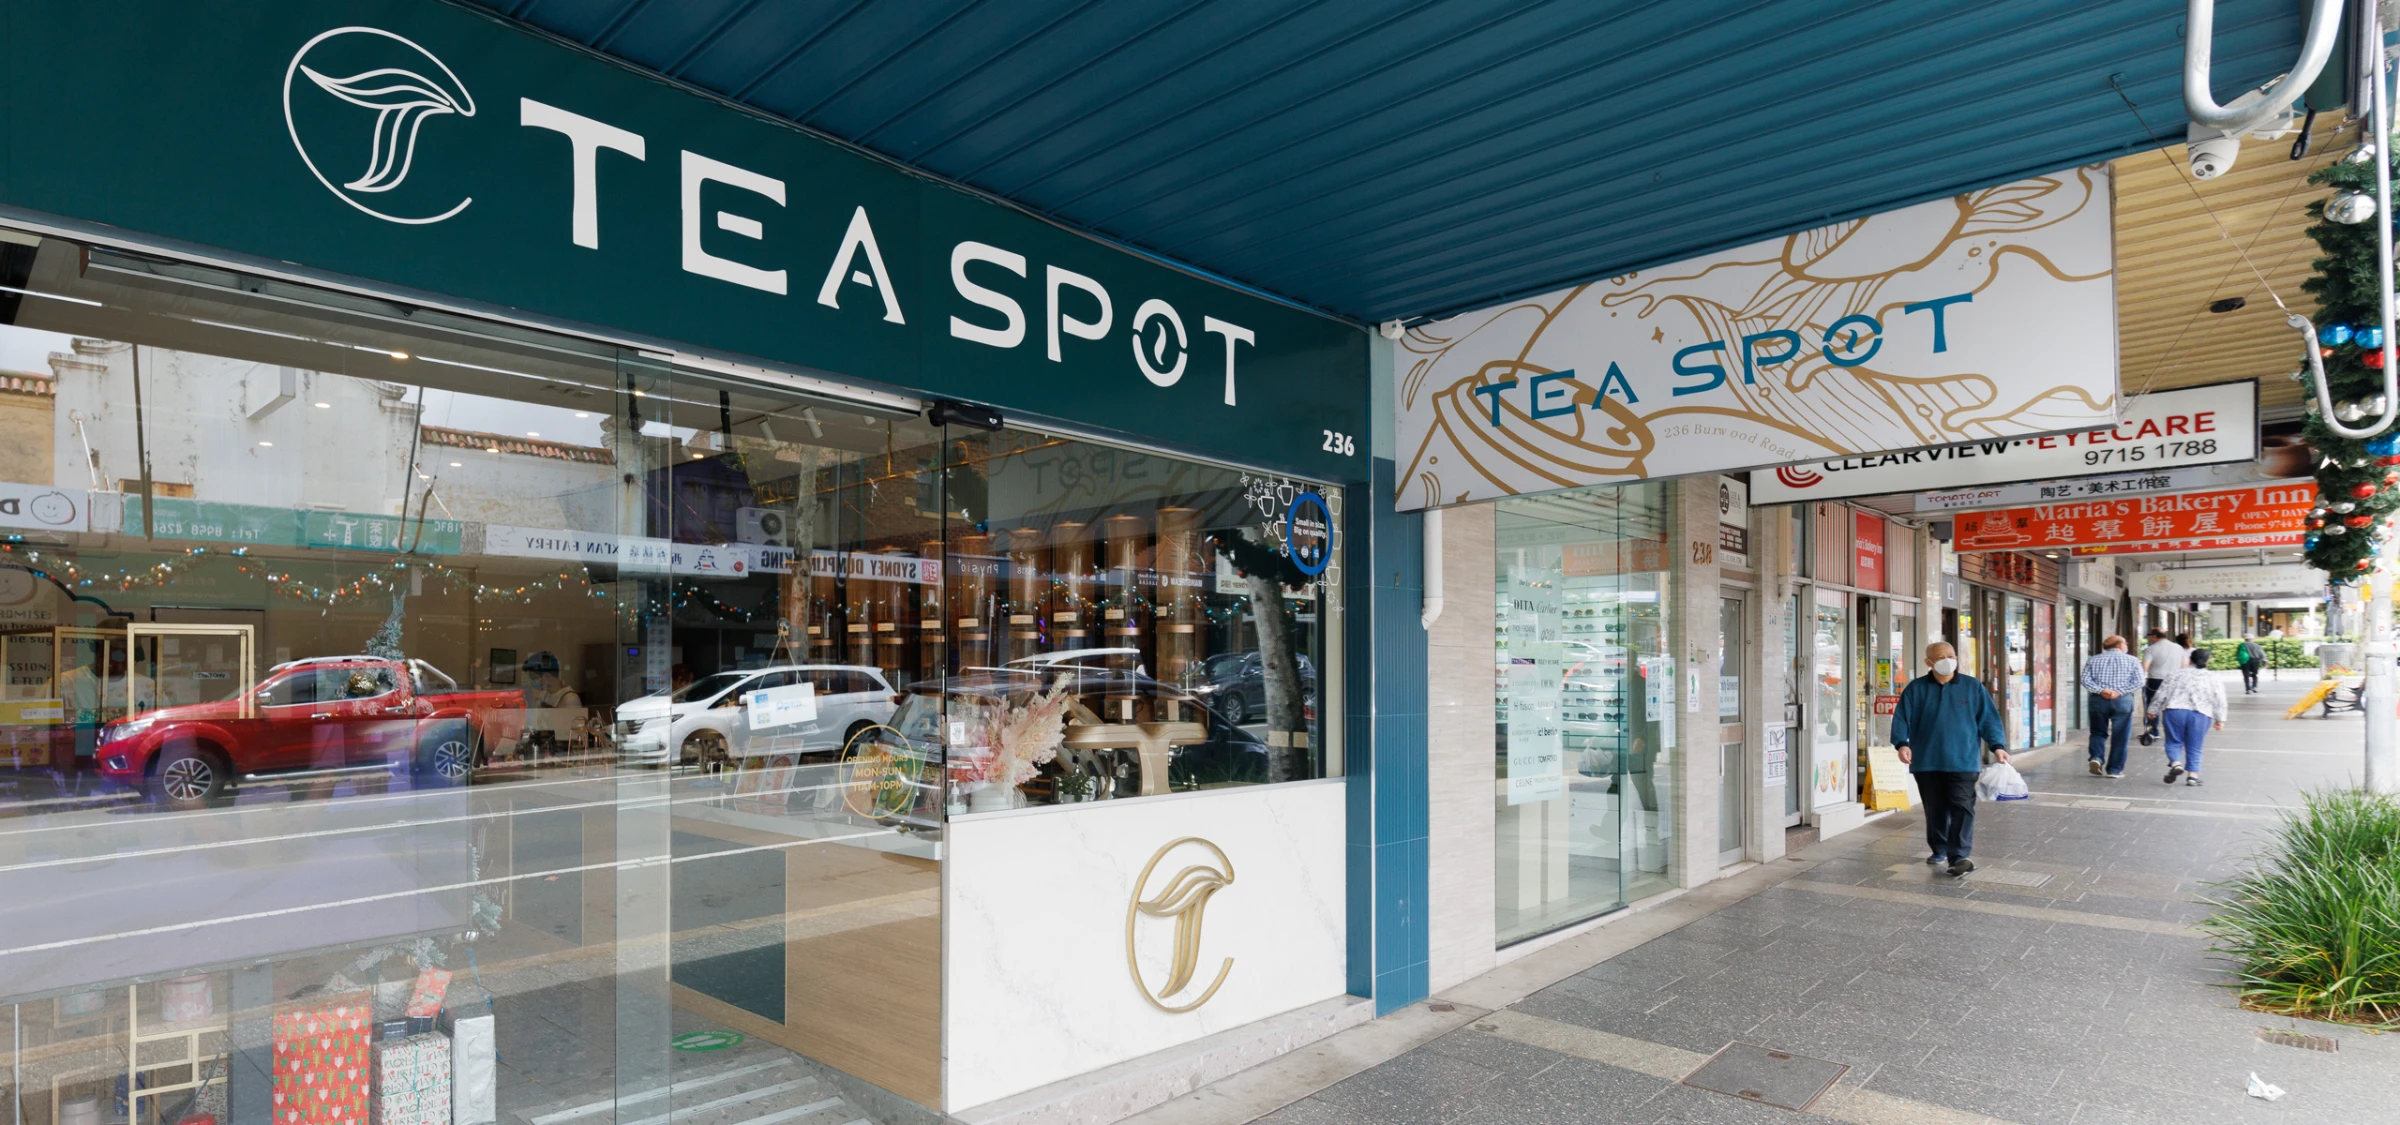 Tea Spot: Work by Skyfield Co